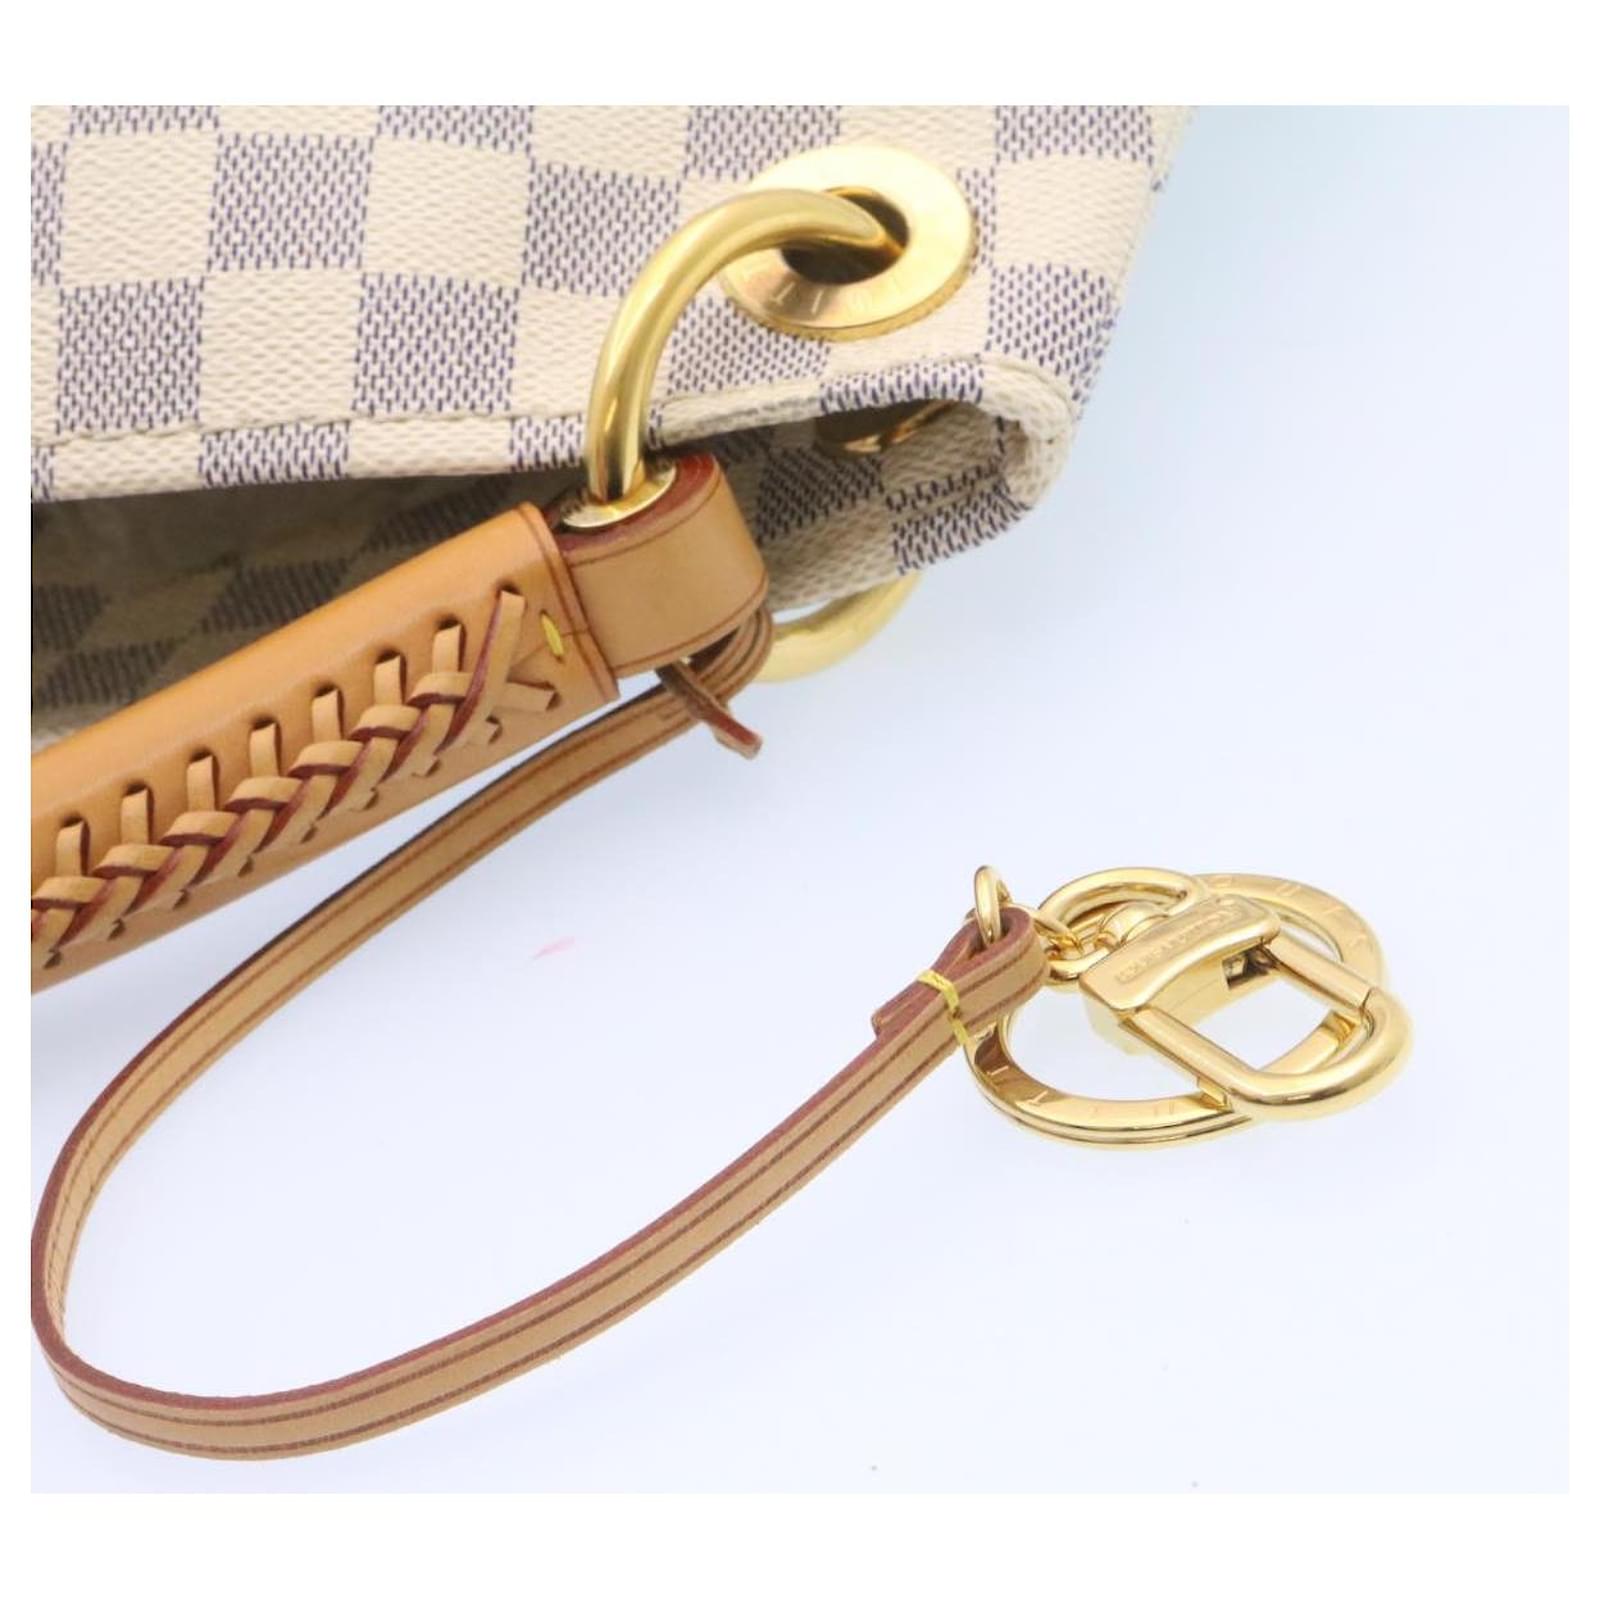 LOUIS VUITTON Handbag N41174 Arti MM Damier Azur Canvas/Leather